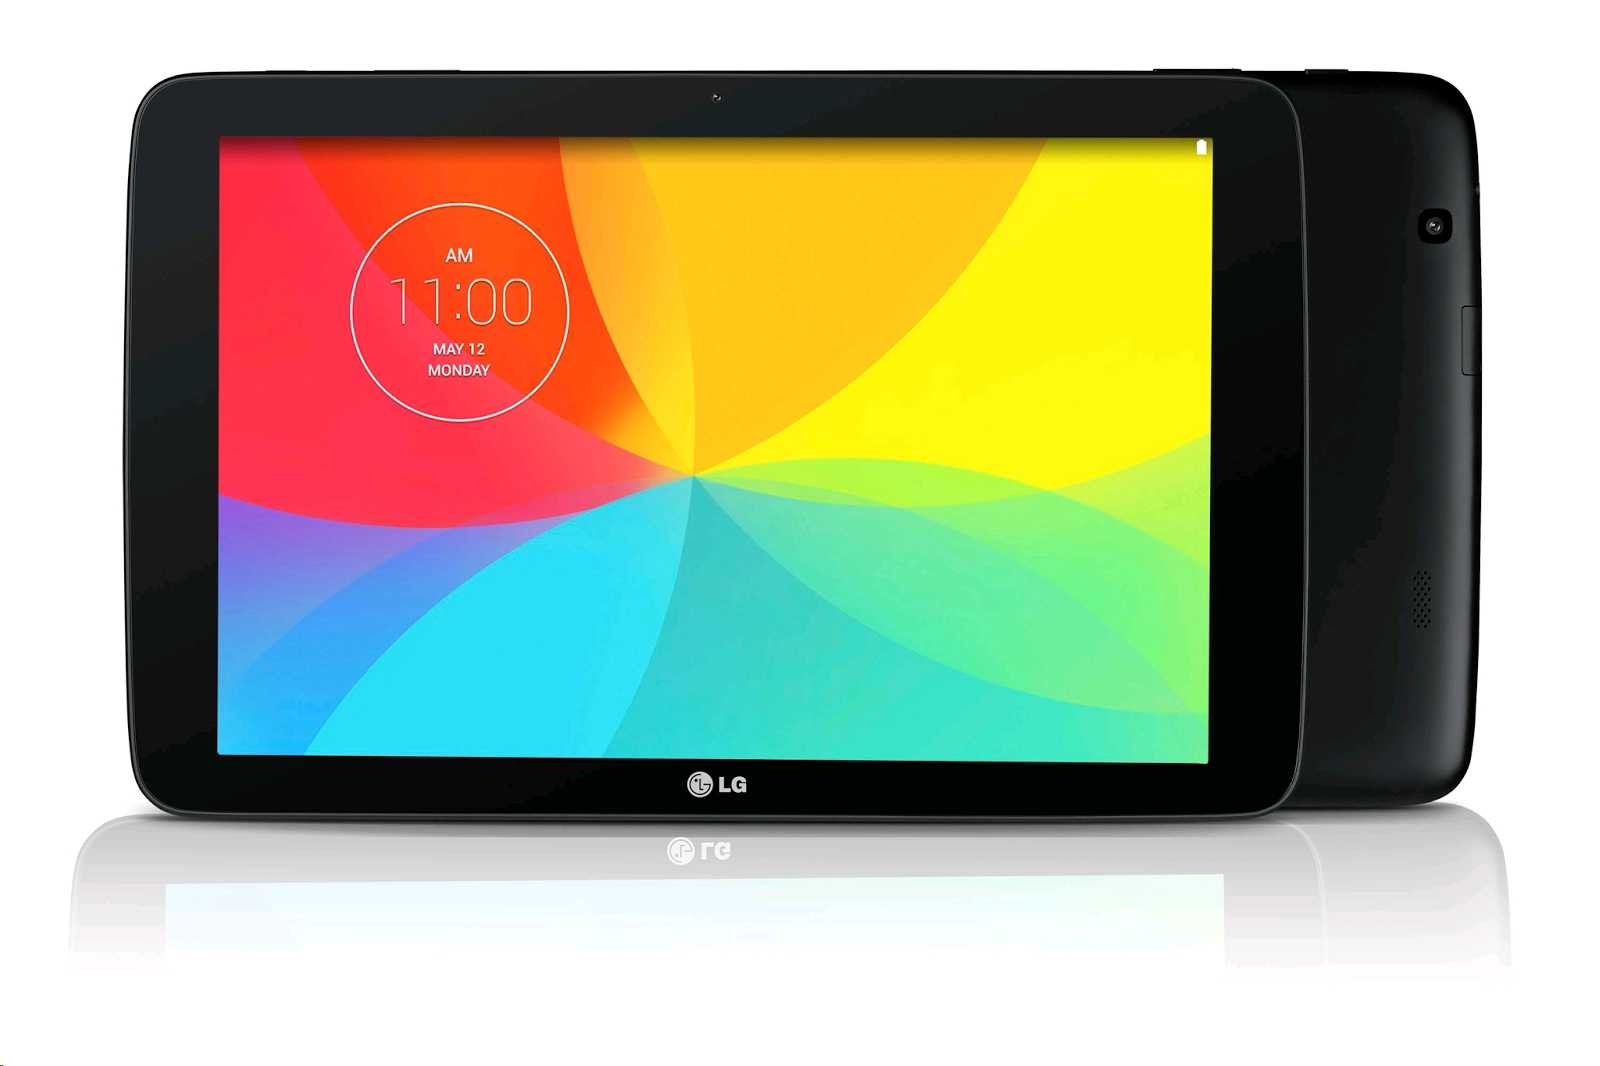 Lg g pad 7.0 v400 (белый) - купить , скидки, цена, отзывы, обзор, характеристики - планшеты